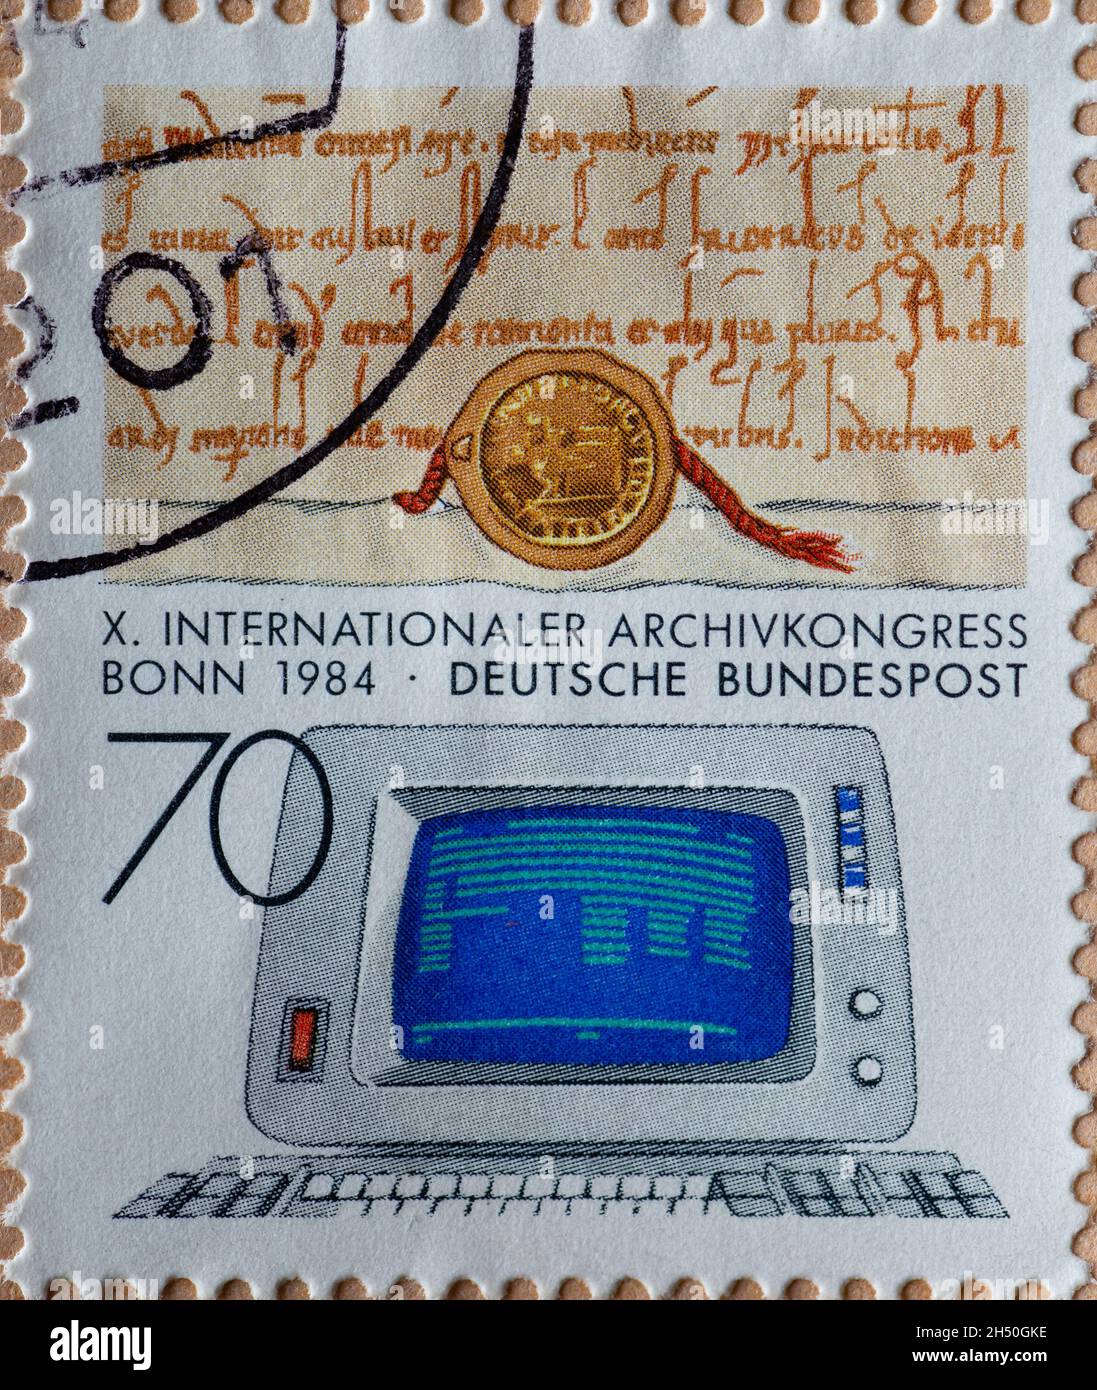 ALLEMAGNE - VERS 1984 : timbre-poste de l'Allemagne, montrant un document du Moyen-âge et un dispositif d'affichage de données désuet.Archive internationale Banque D'Images